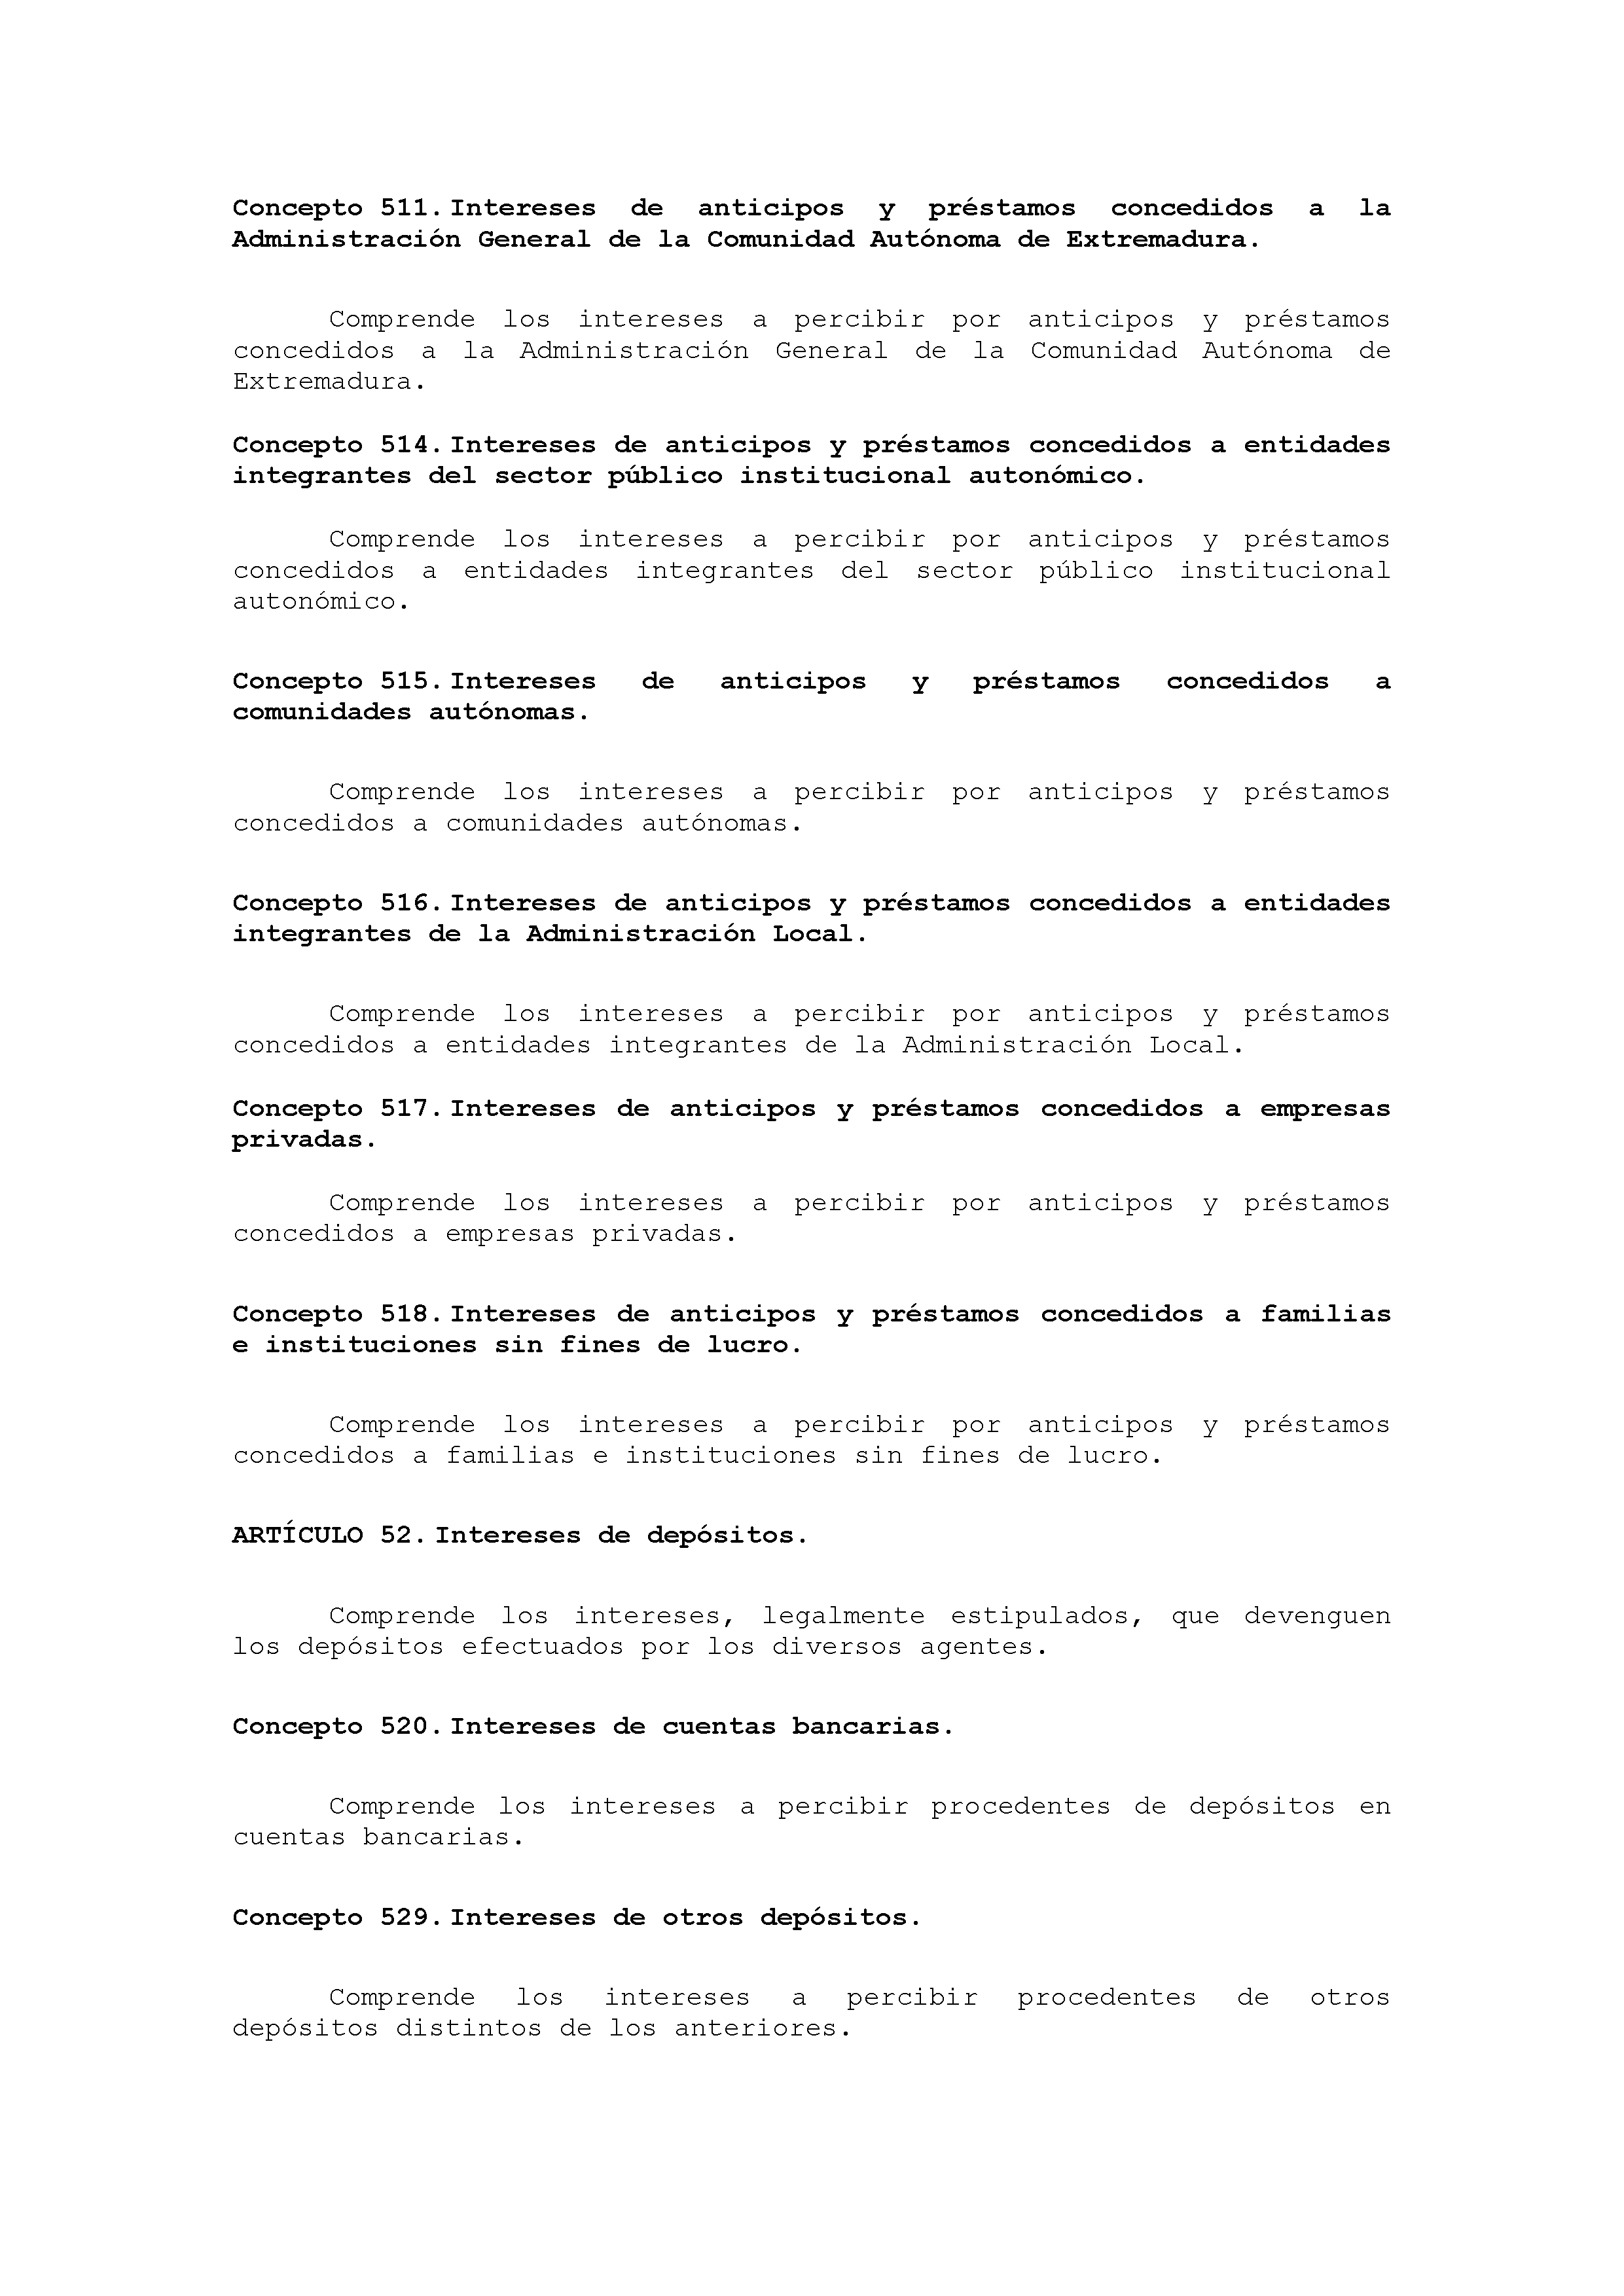 ANEXO VIII CÓDIGO DE LA CLASIFICACIÓN ECONÓMICA DE LOS INGRESOS PÚBLICOS Pag 16